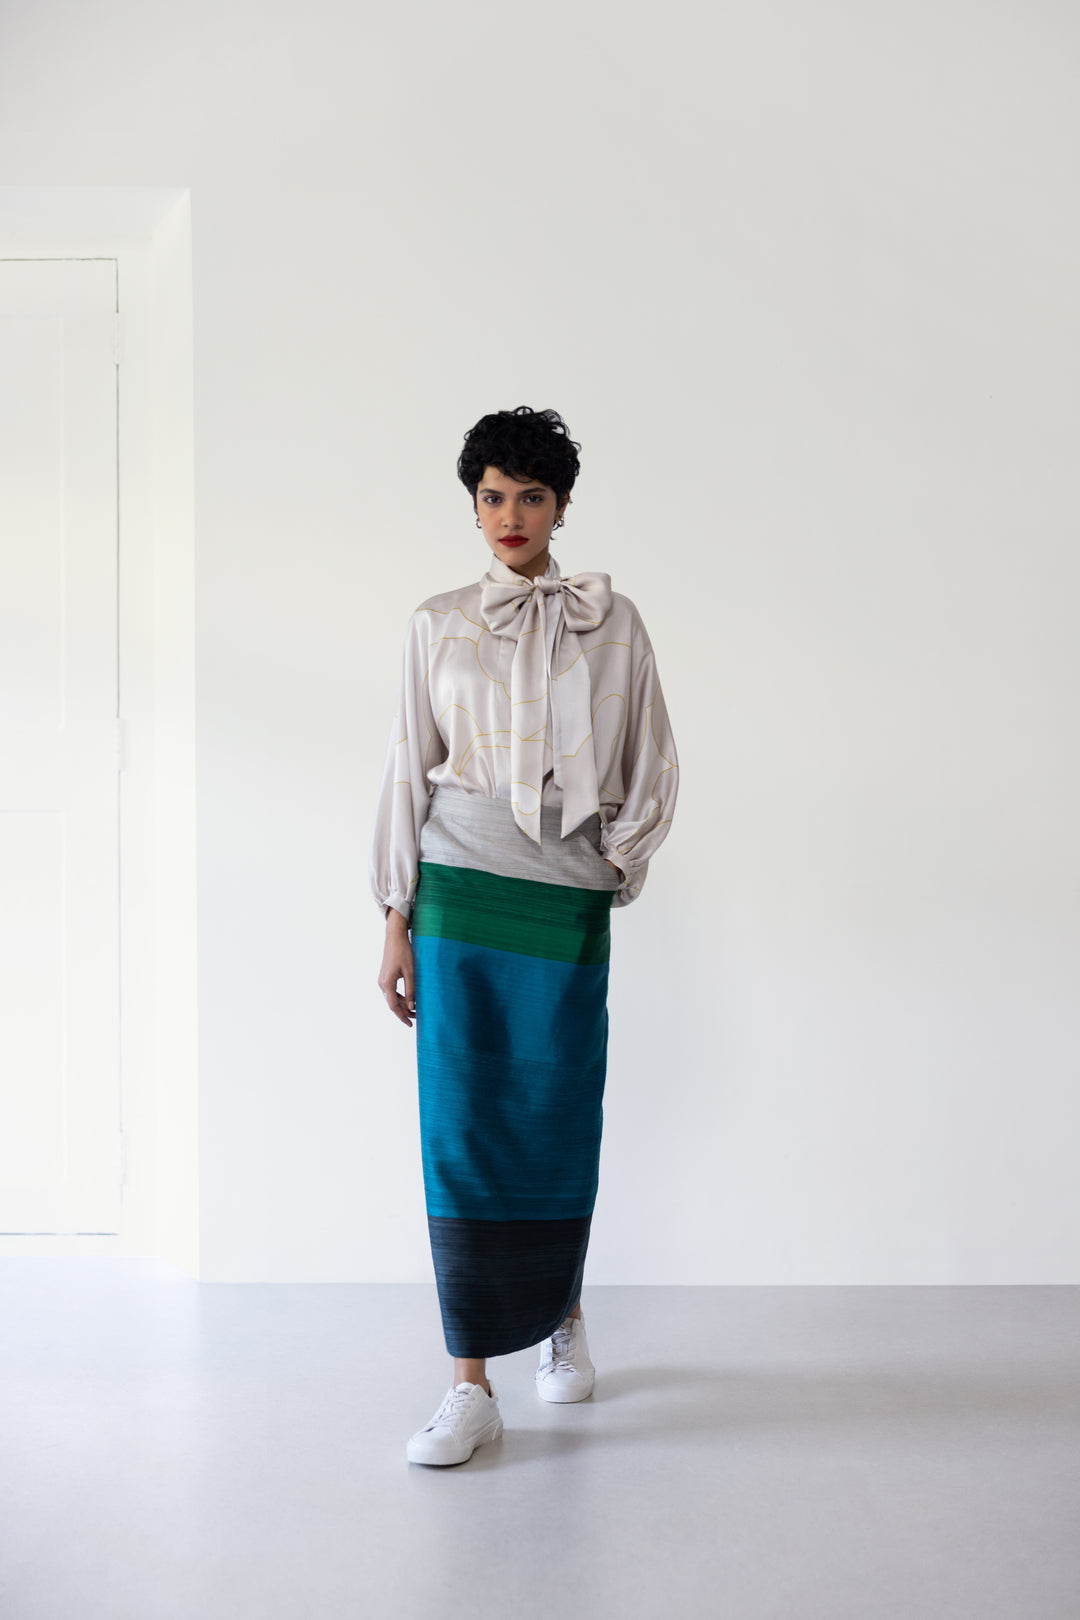 Handwoven Silk Skirt